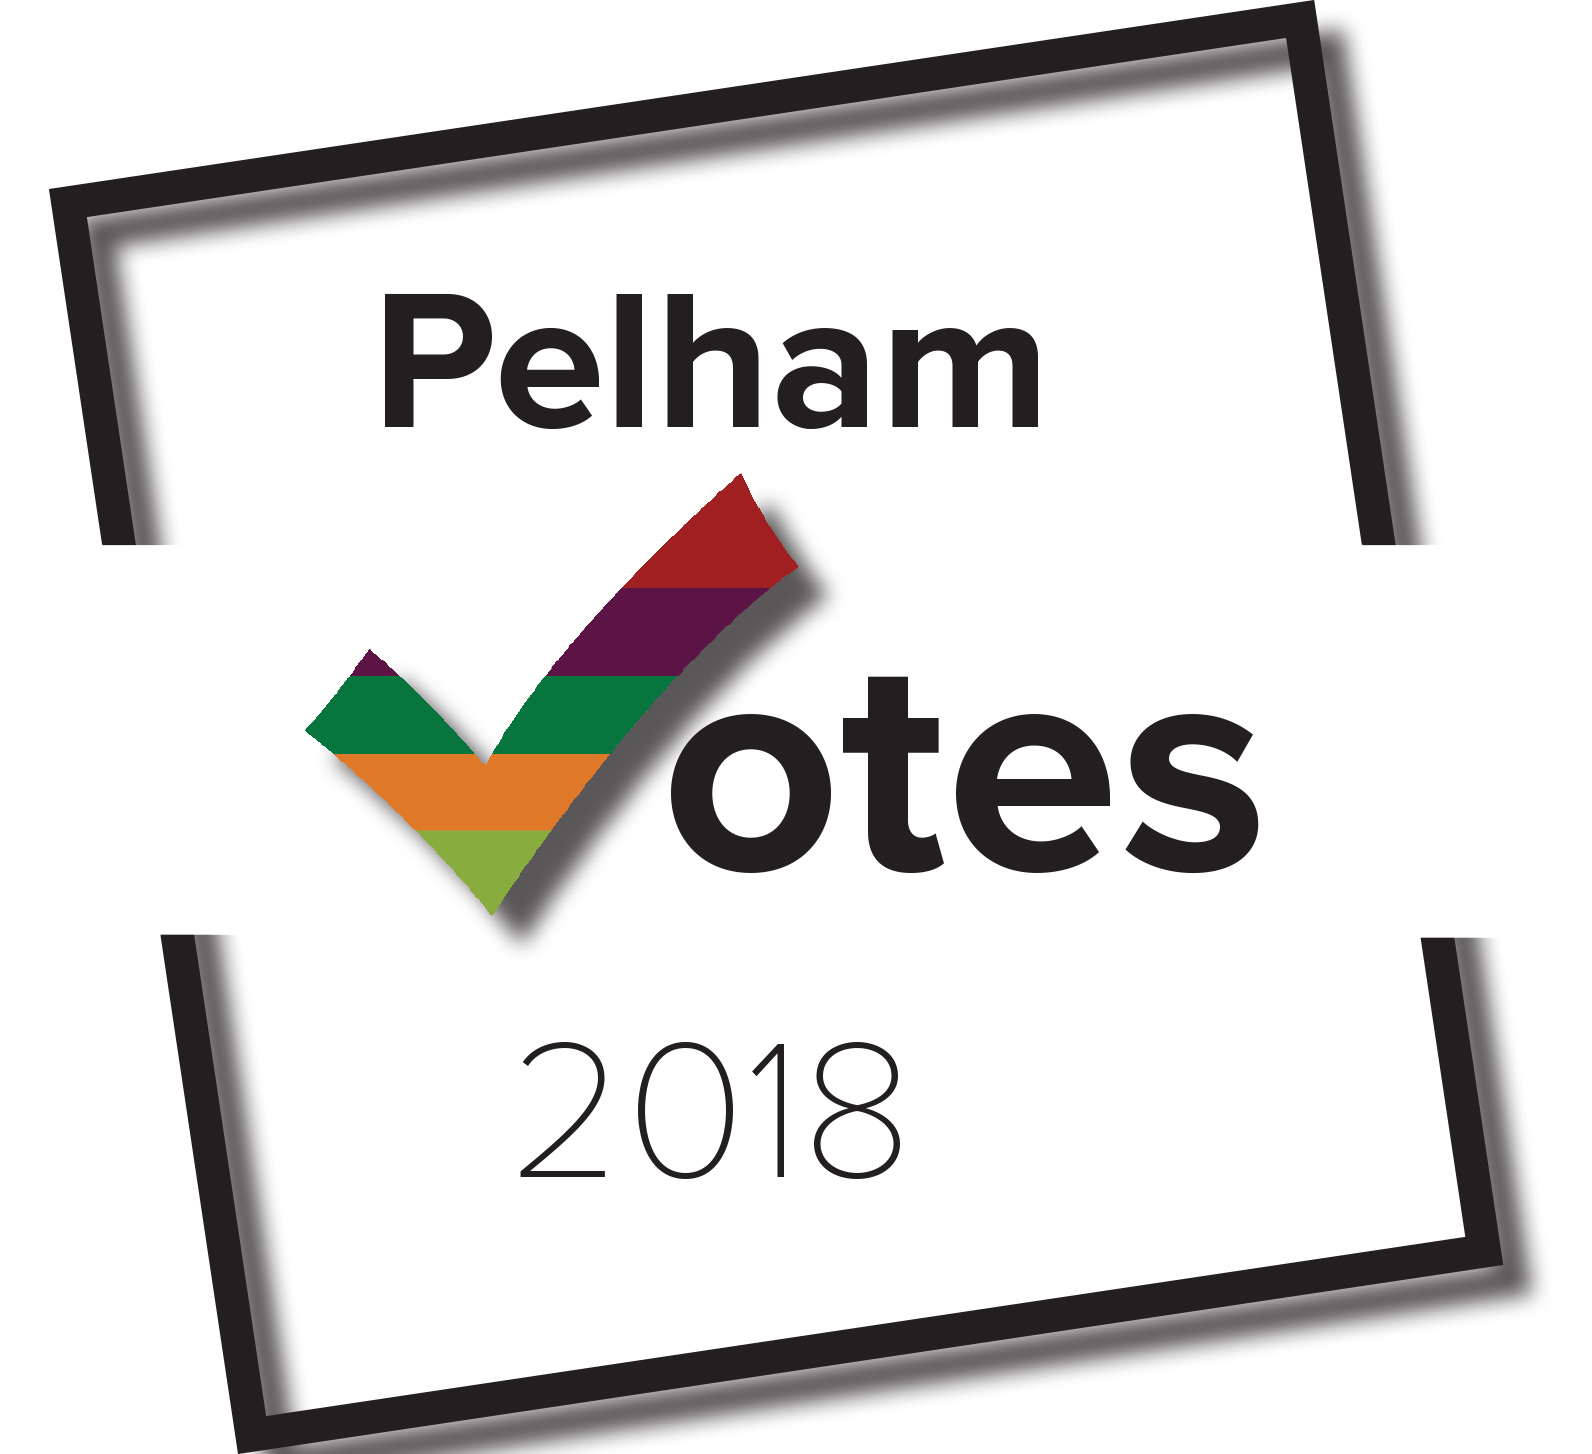 Pelham votes 2018